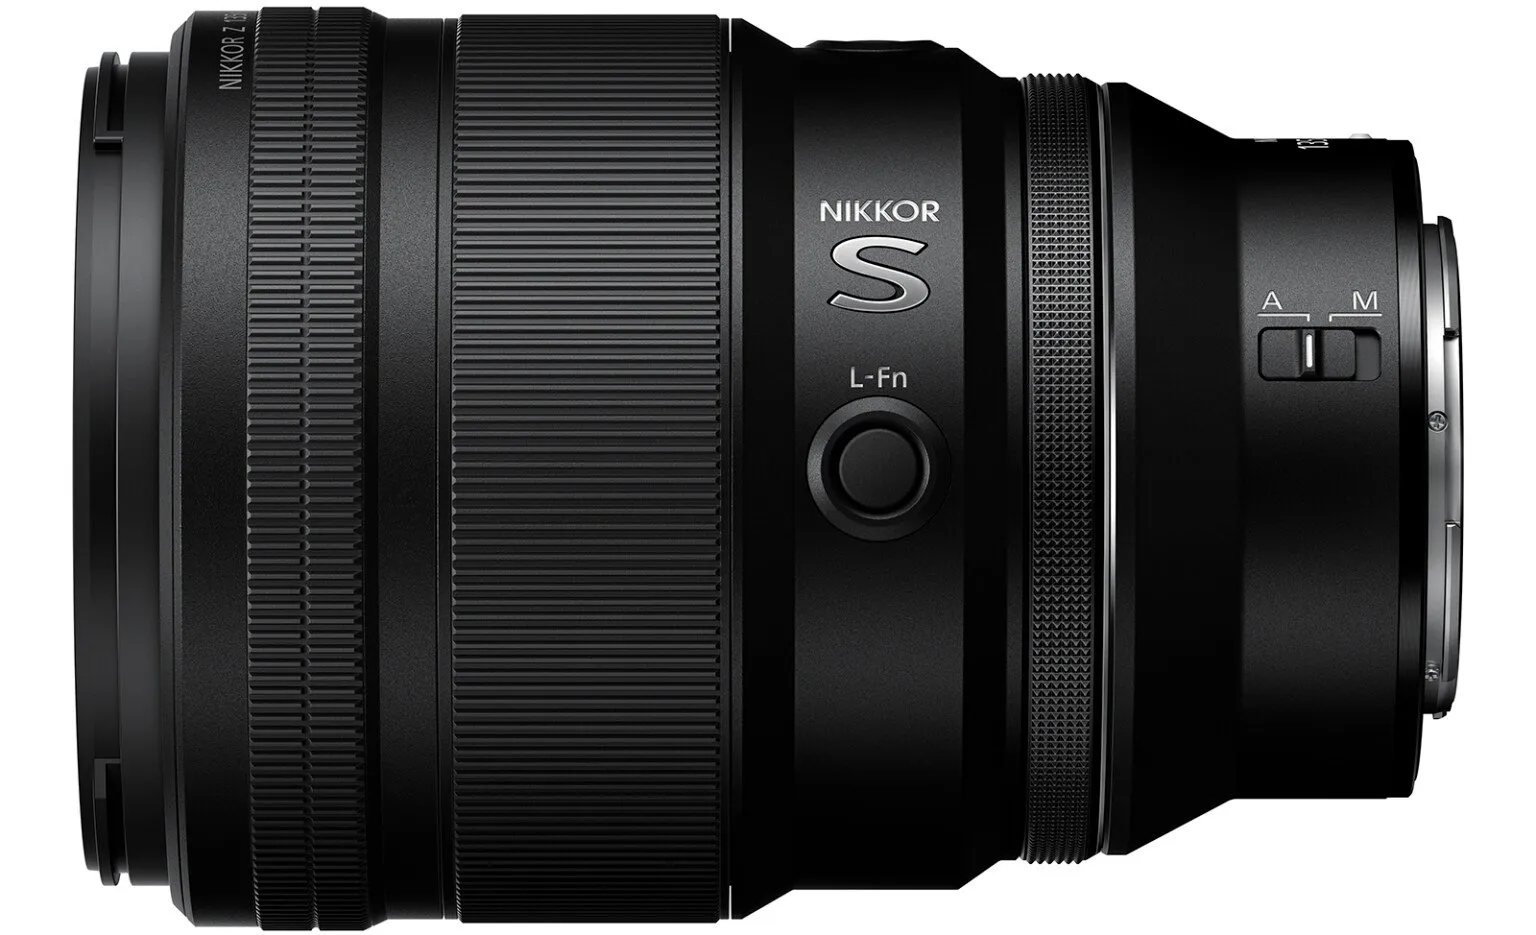 Nikon ra mắt ống kính Nikkor Z 135mm F1.8 S Plena với khẩu độ mở rộng cho bokeh hoàn hảo